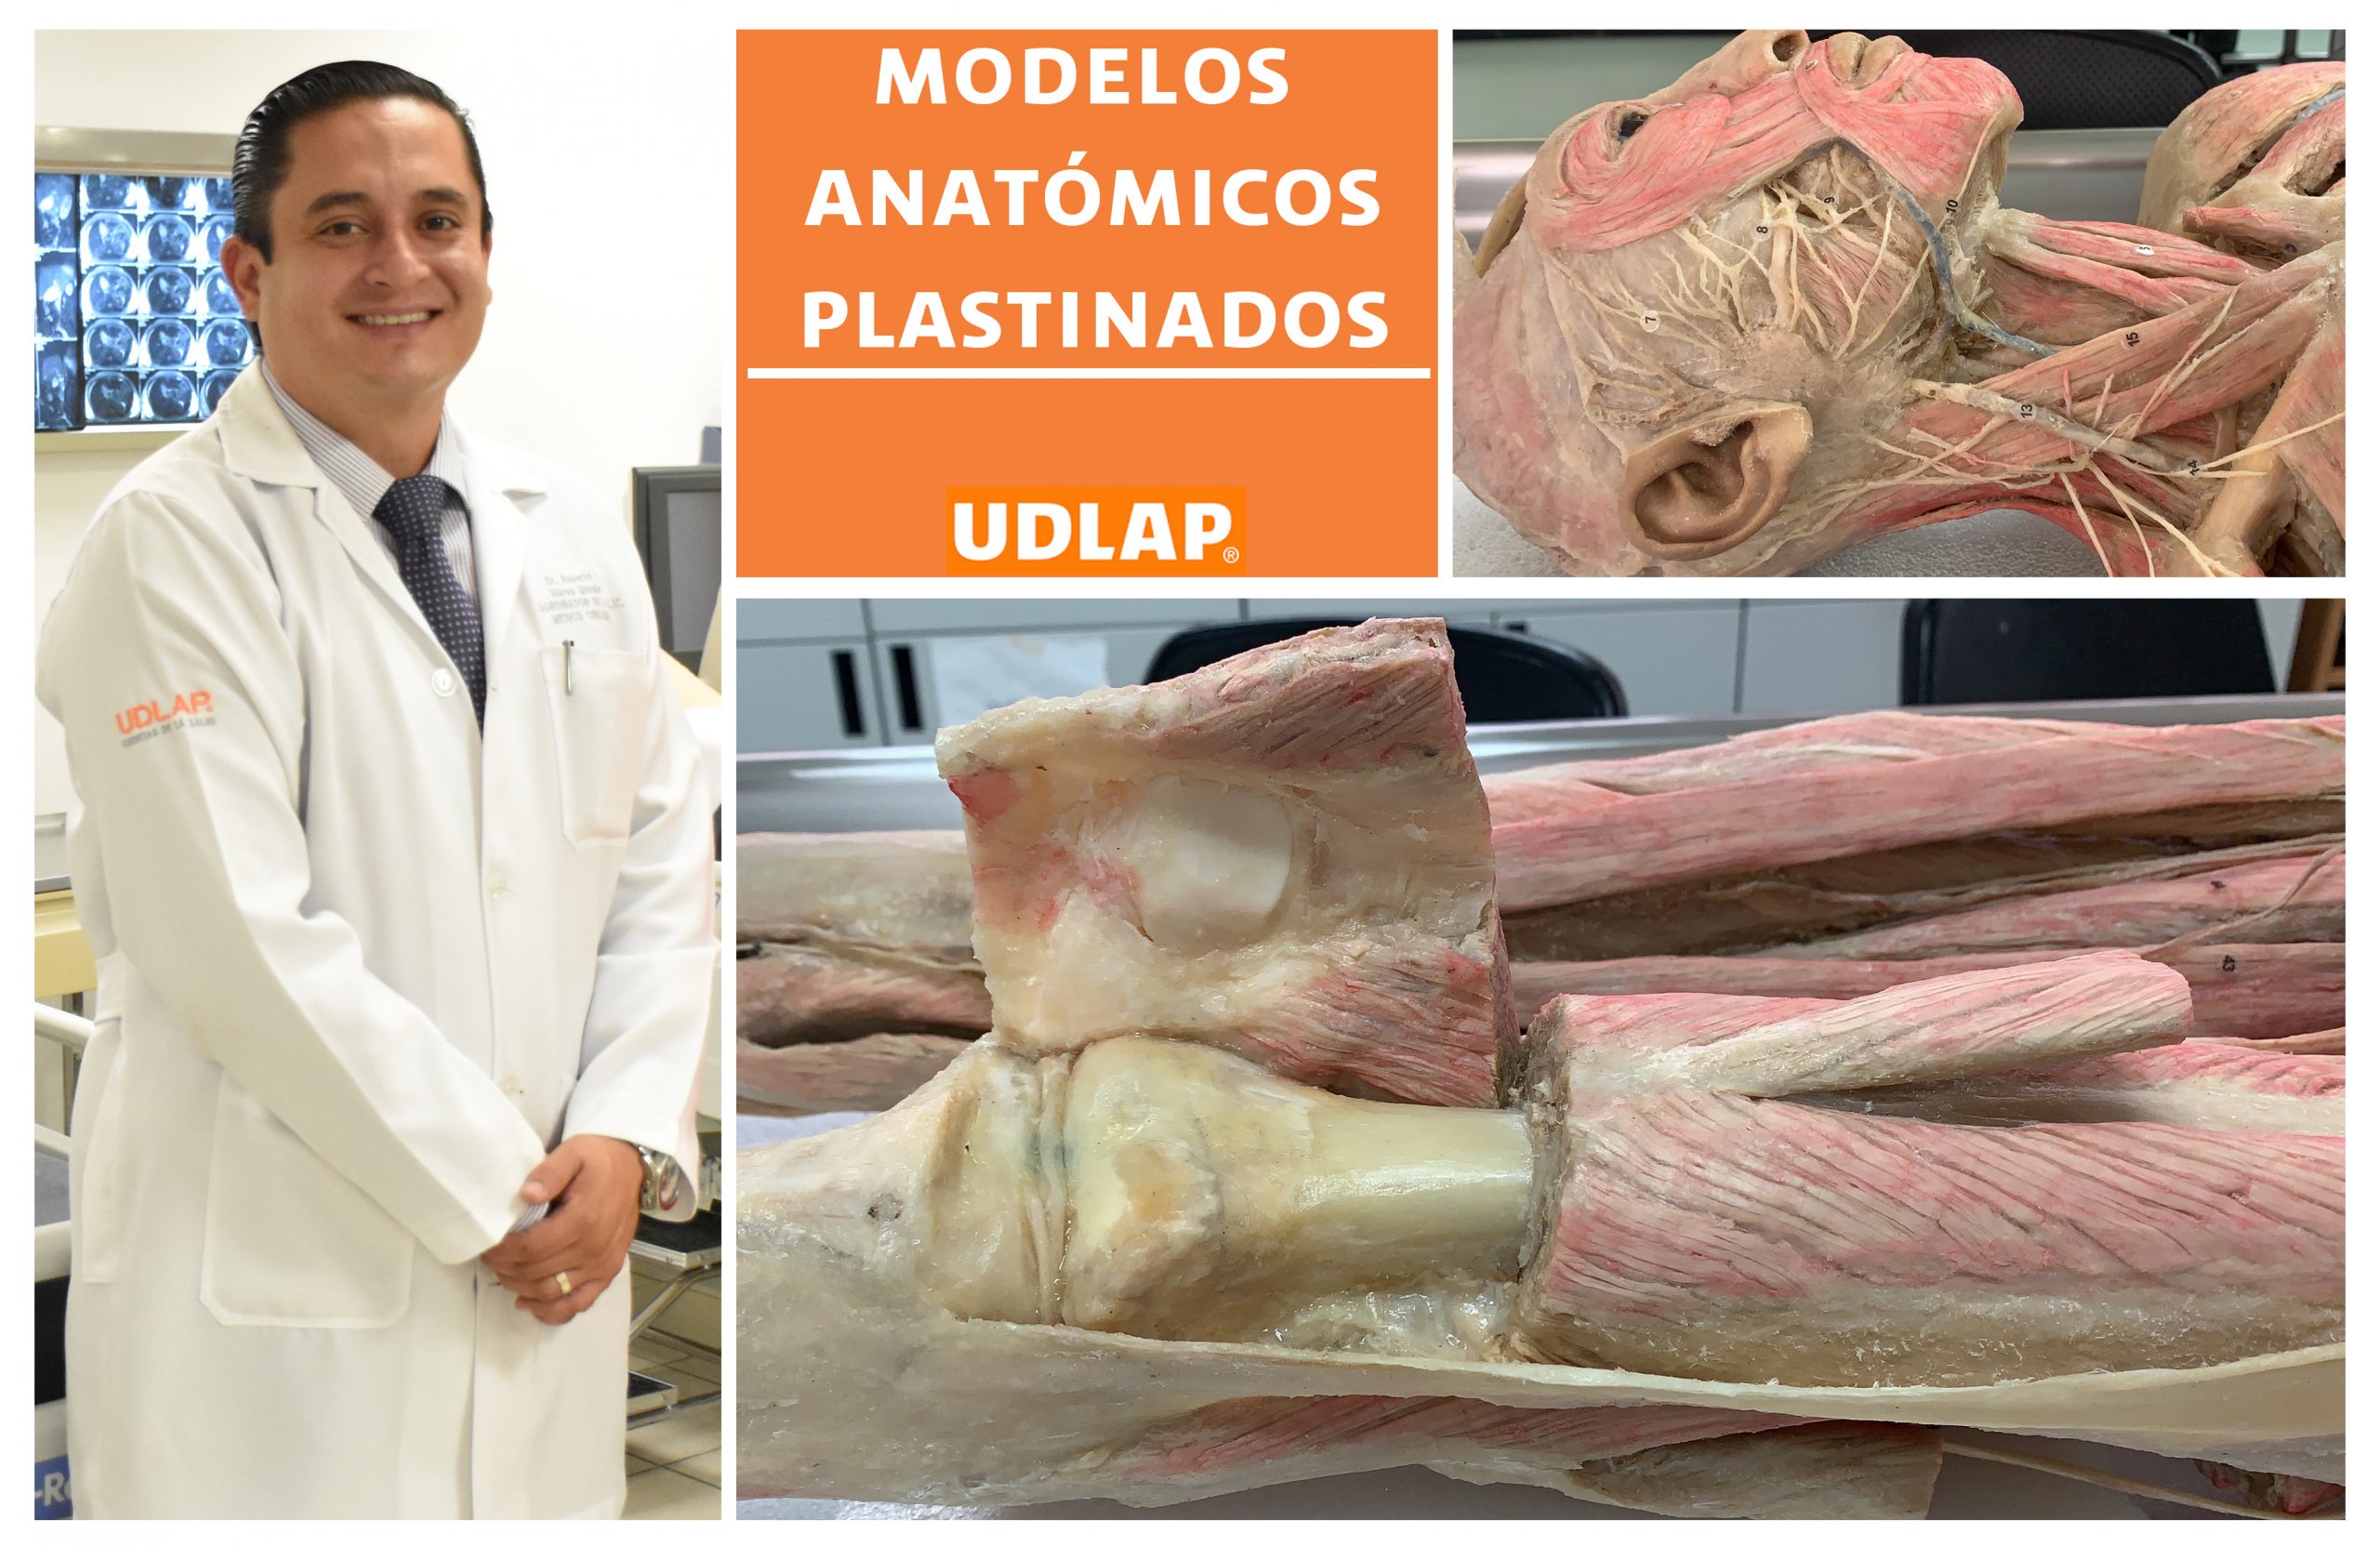 UDLAP emplea modelos anatómicos por plastinación para el estudio de la anatomía humana